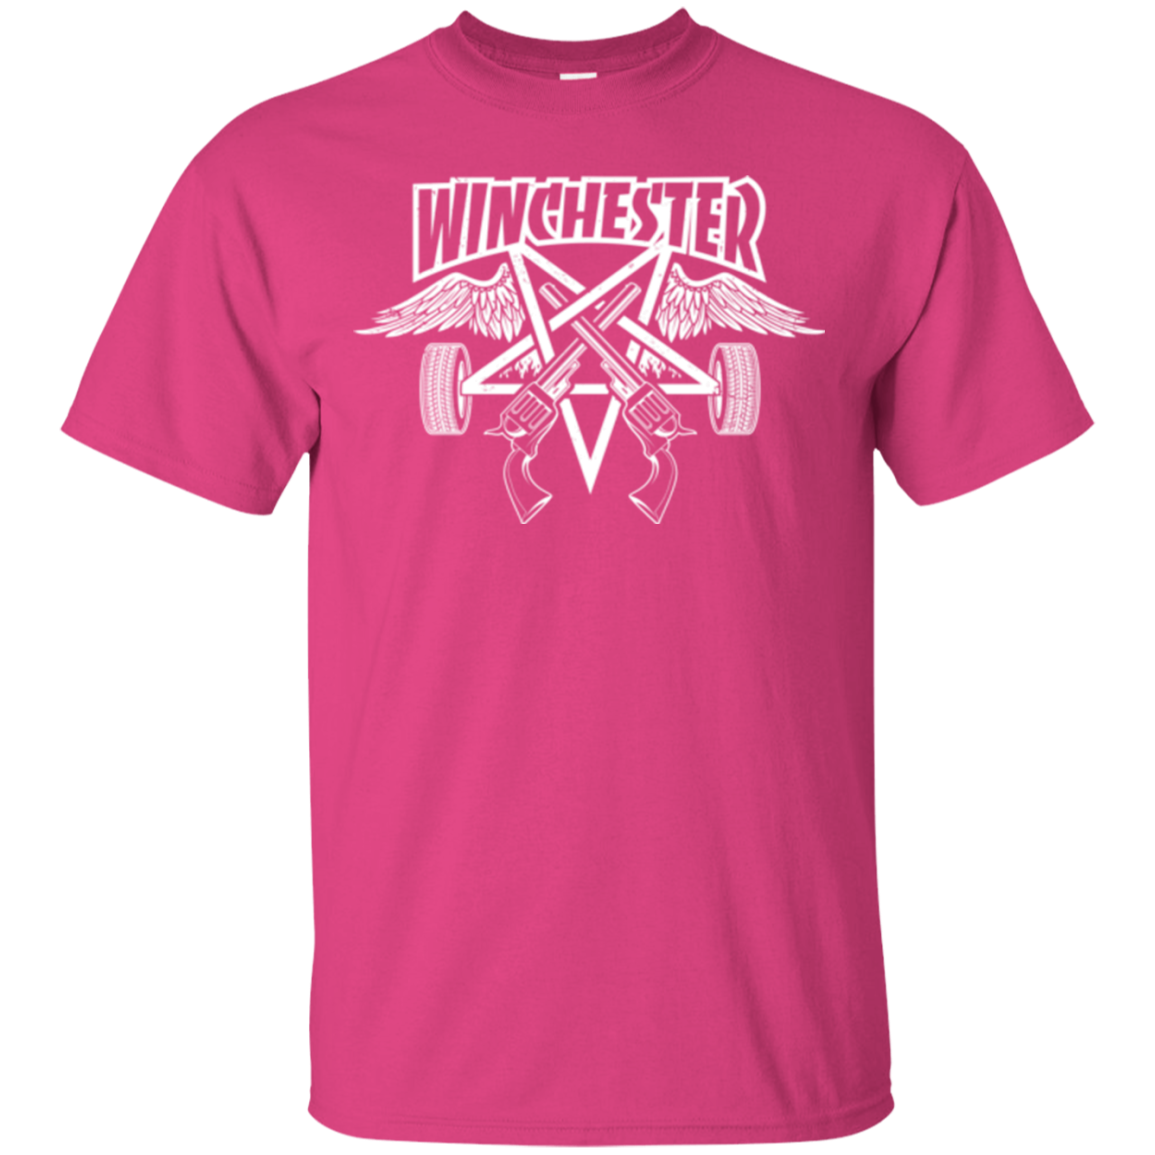 WINCHESTER T-Shirt